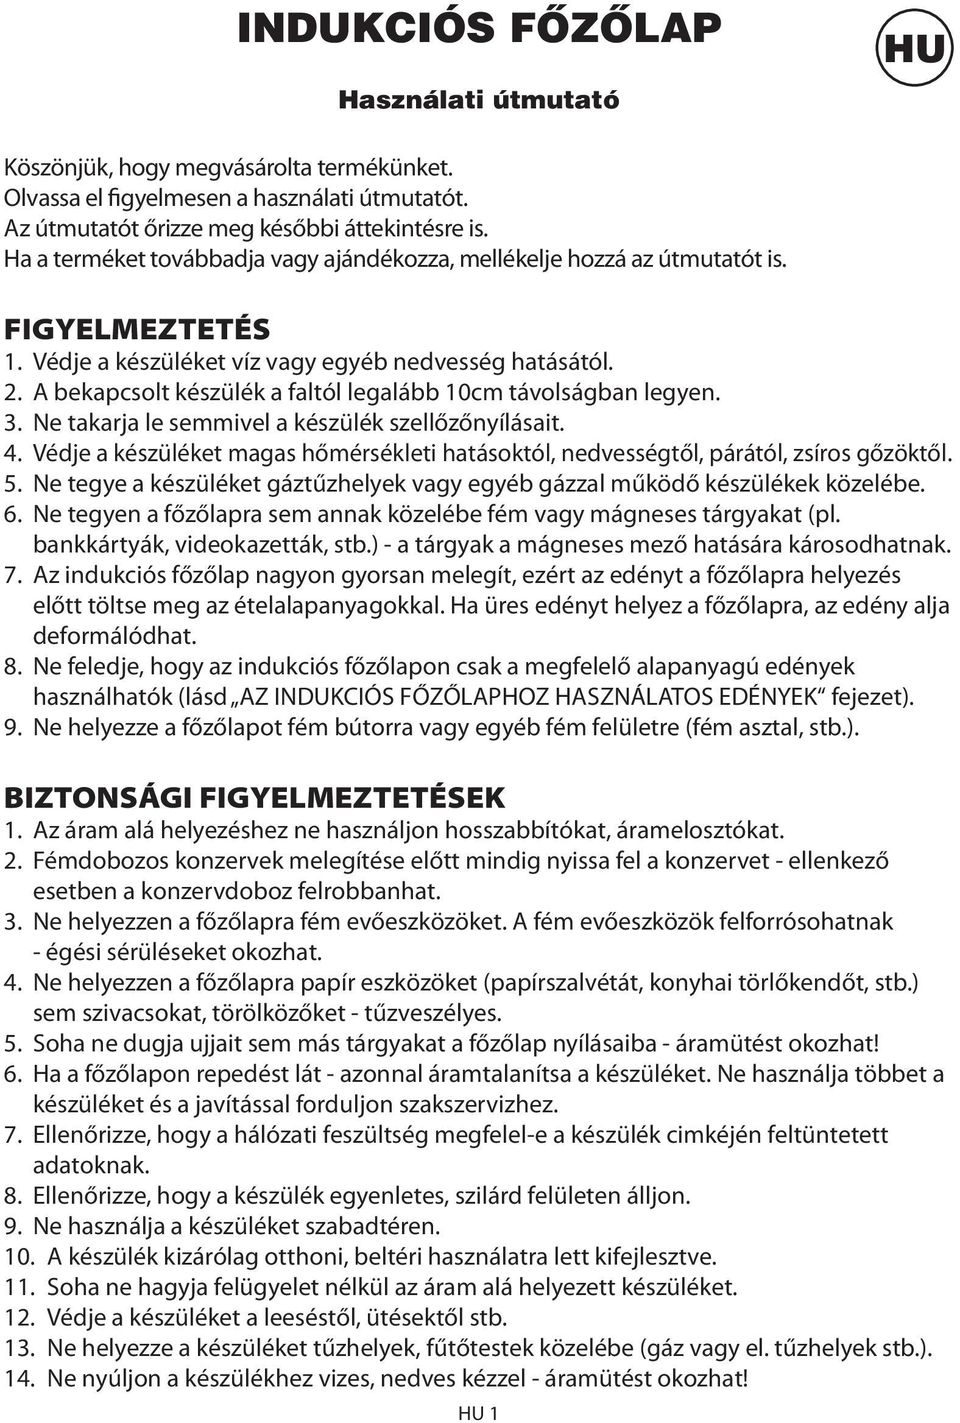 INDUKCIÓS FŐZŐLAP. Használati útmutató - PDF Free Download